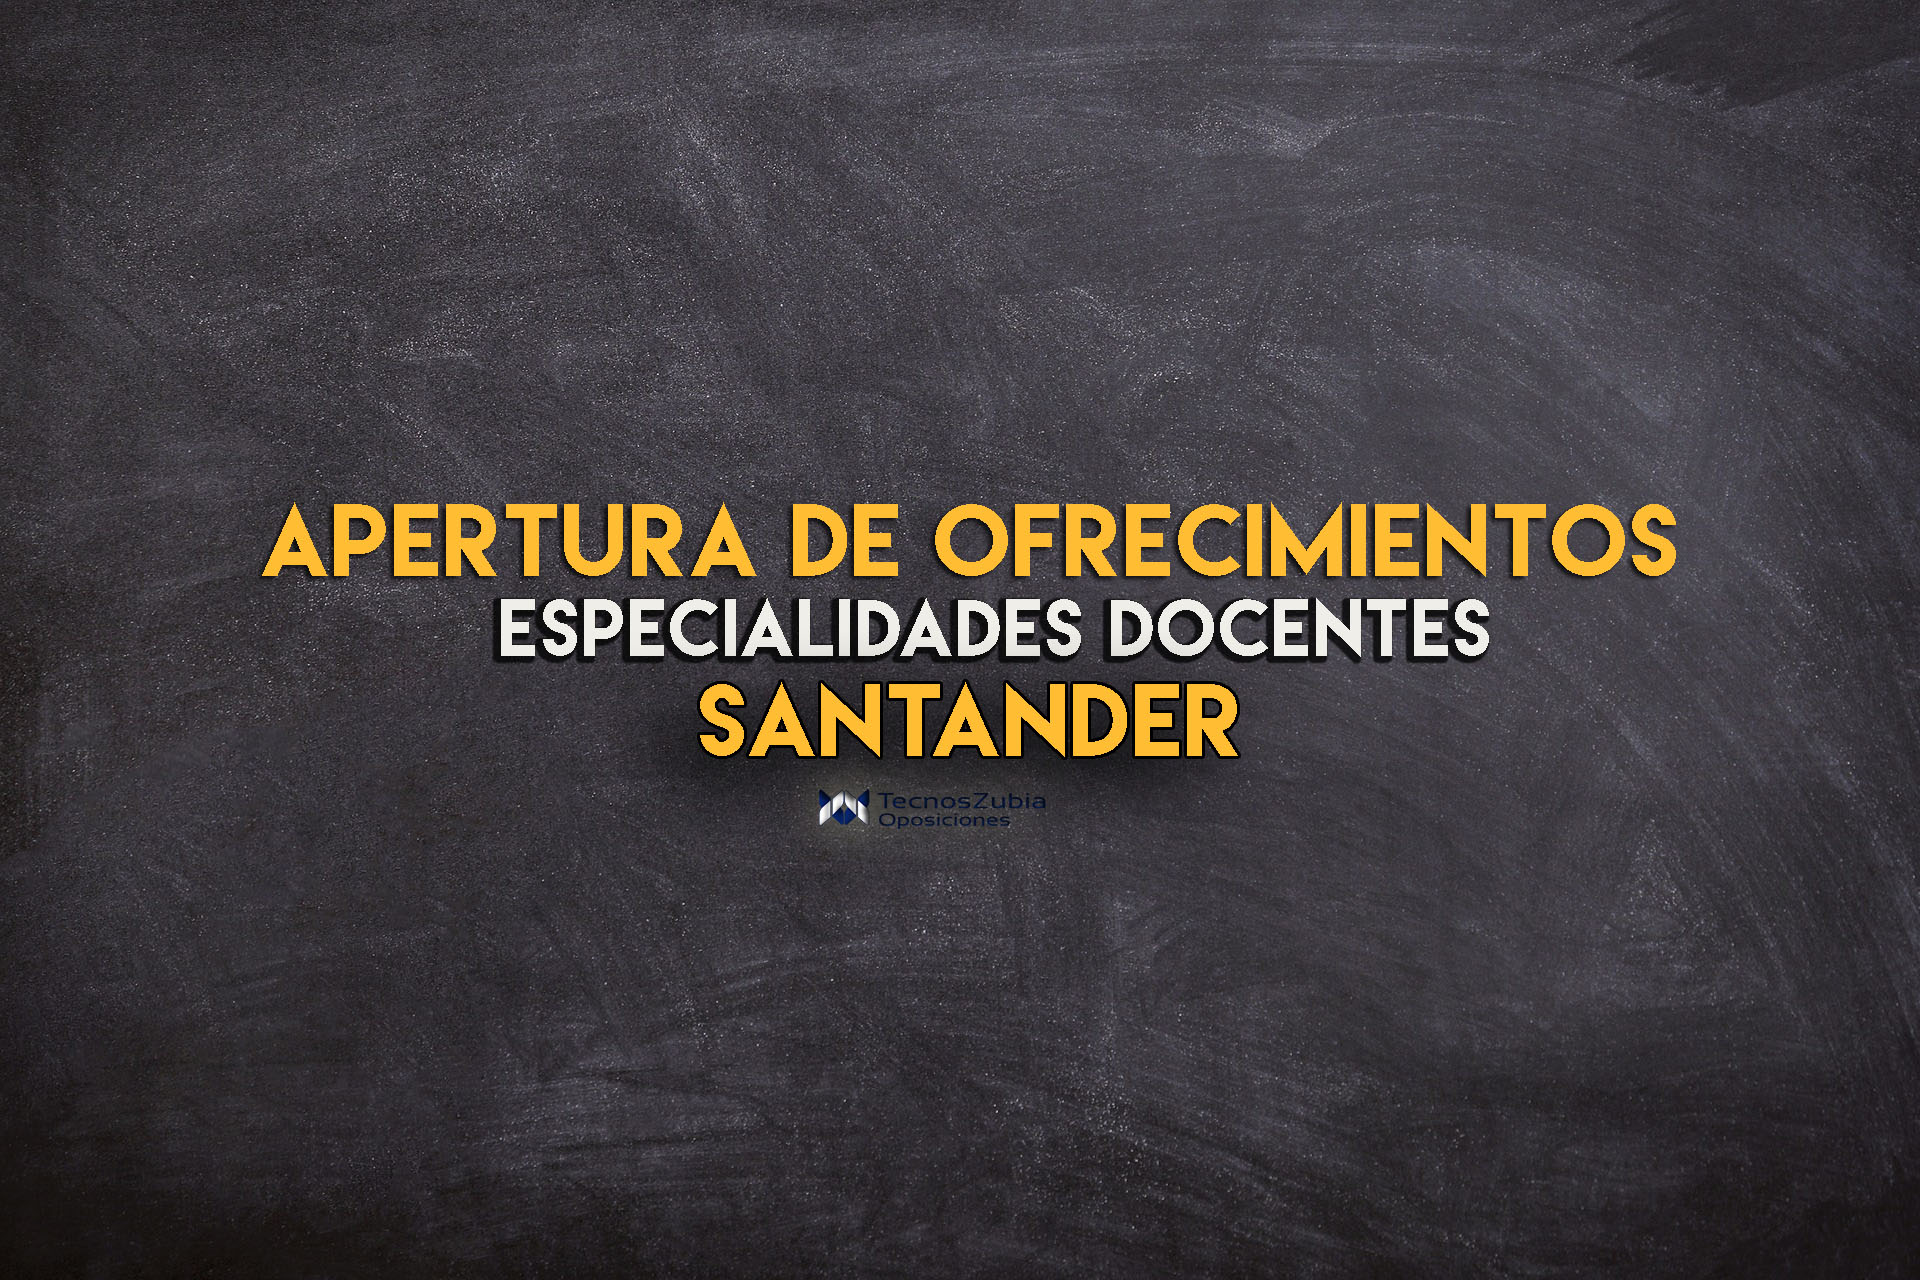 Apertura ofrecimientos docentes Santander